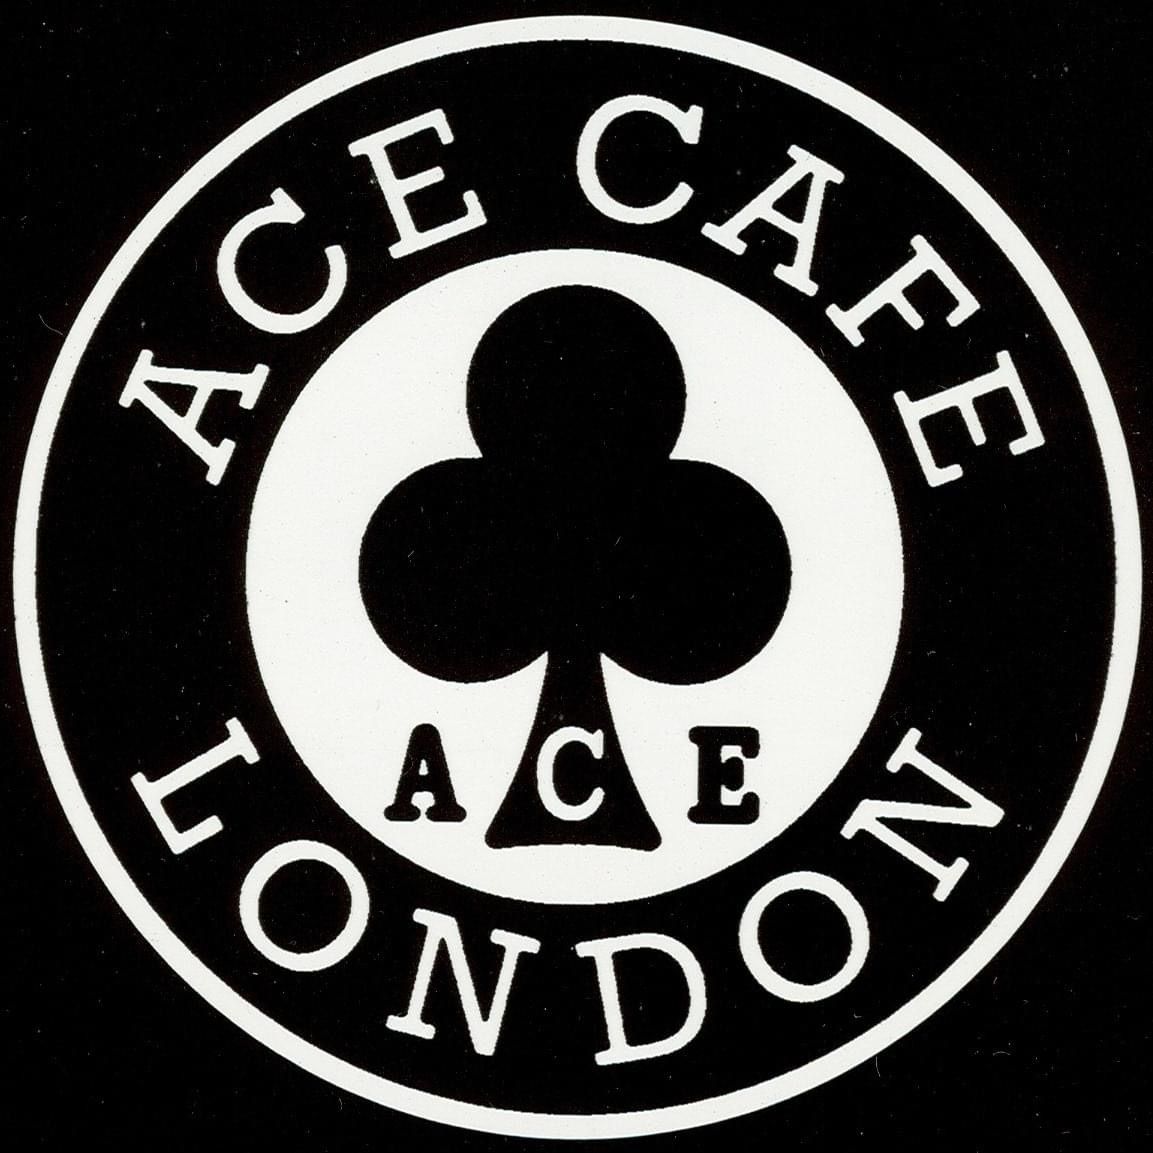 Just Jap @ Ace Cafe London